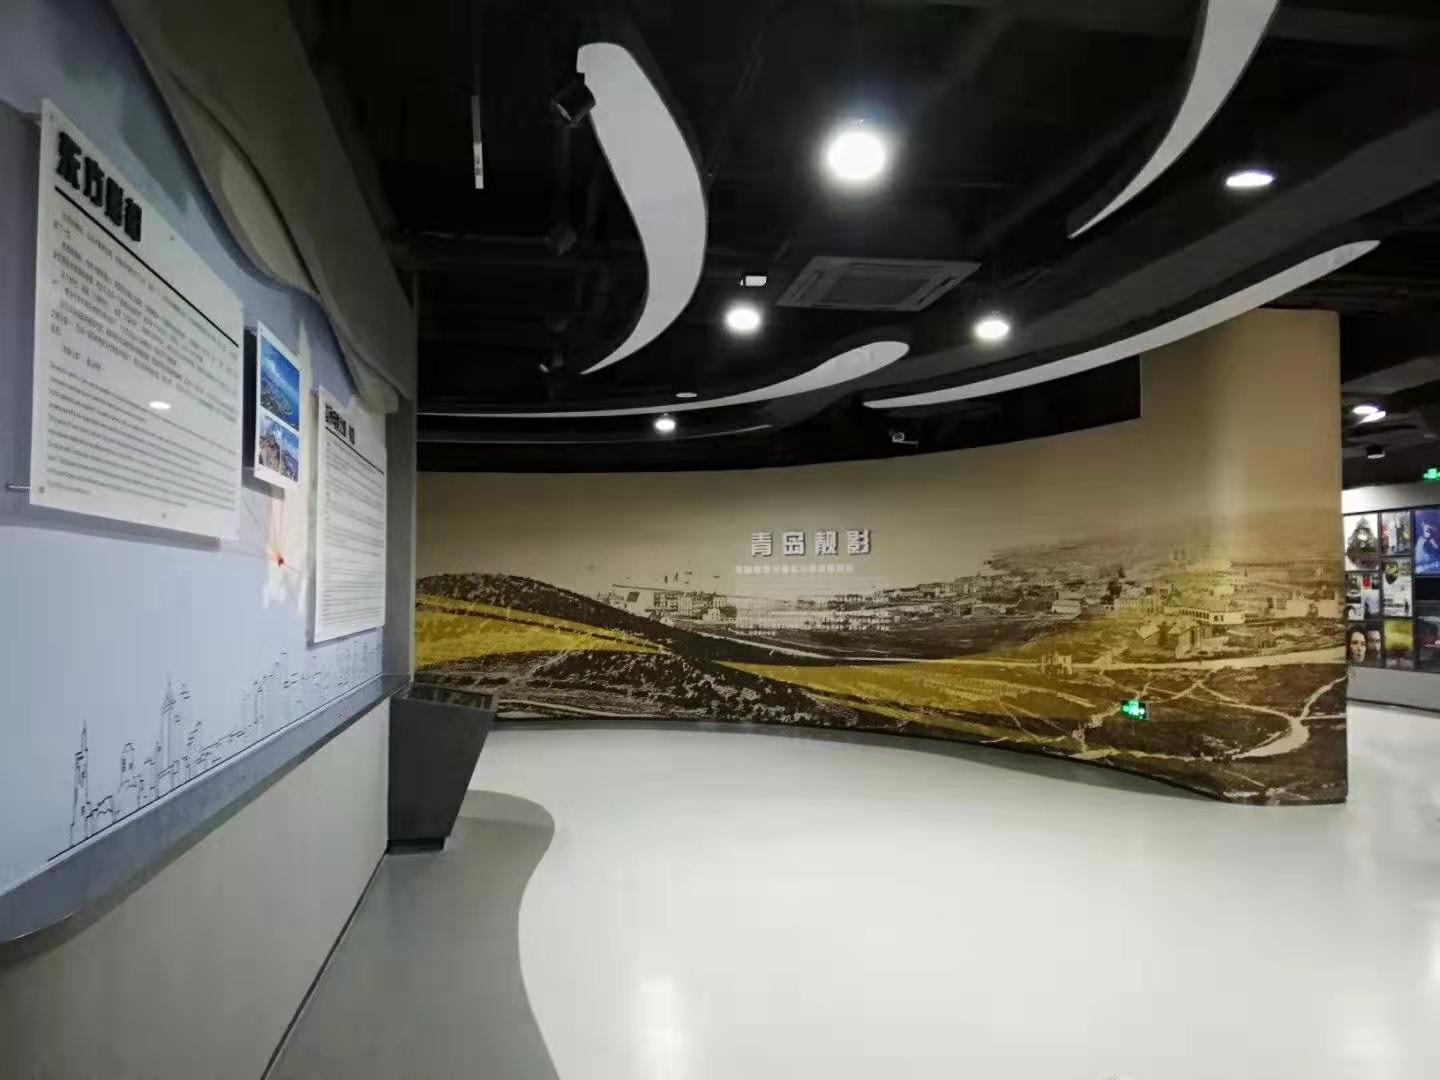 上海展馆分区广播讲解系统专业方案设计图片